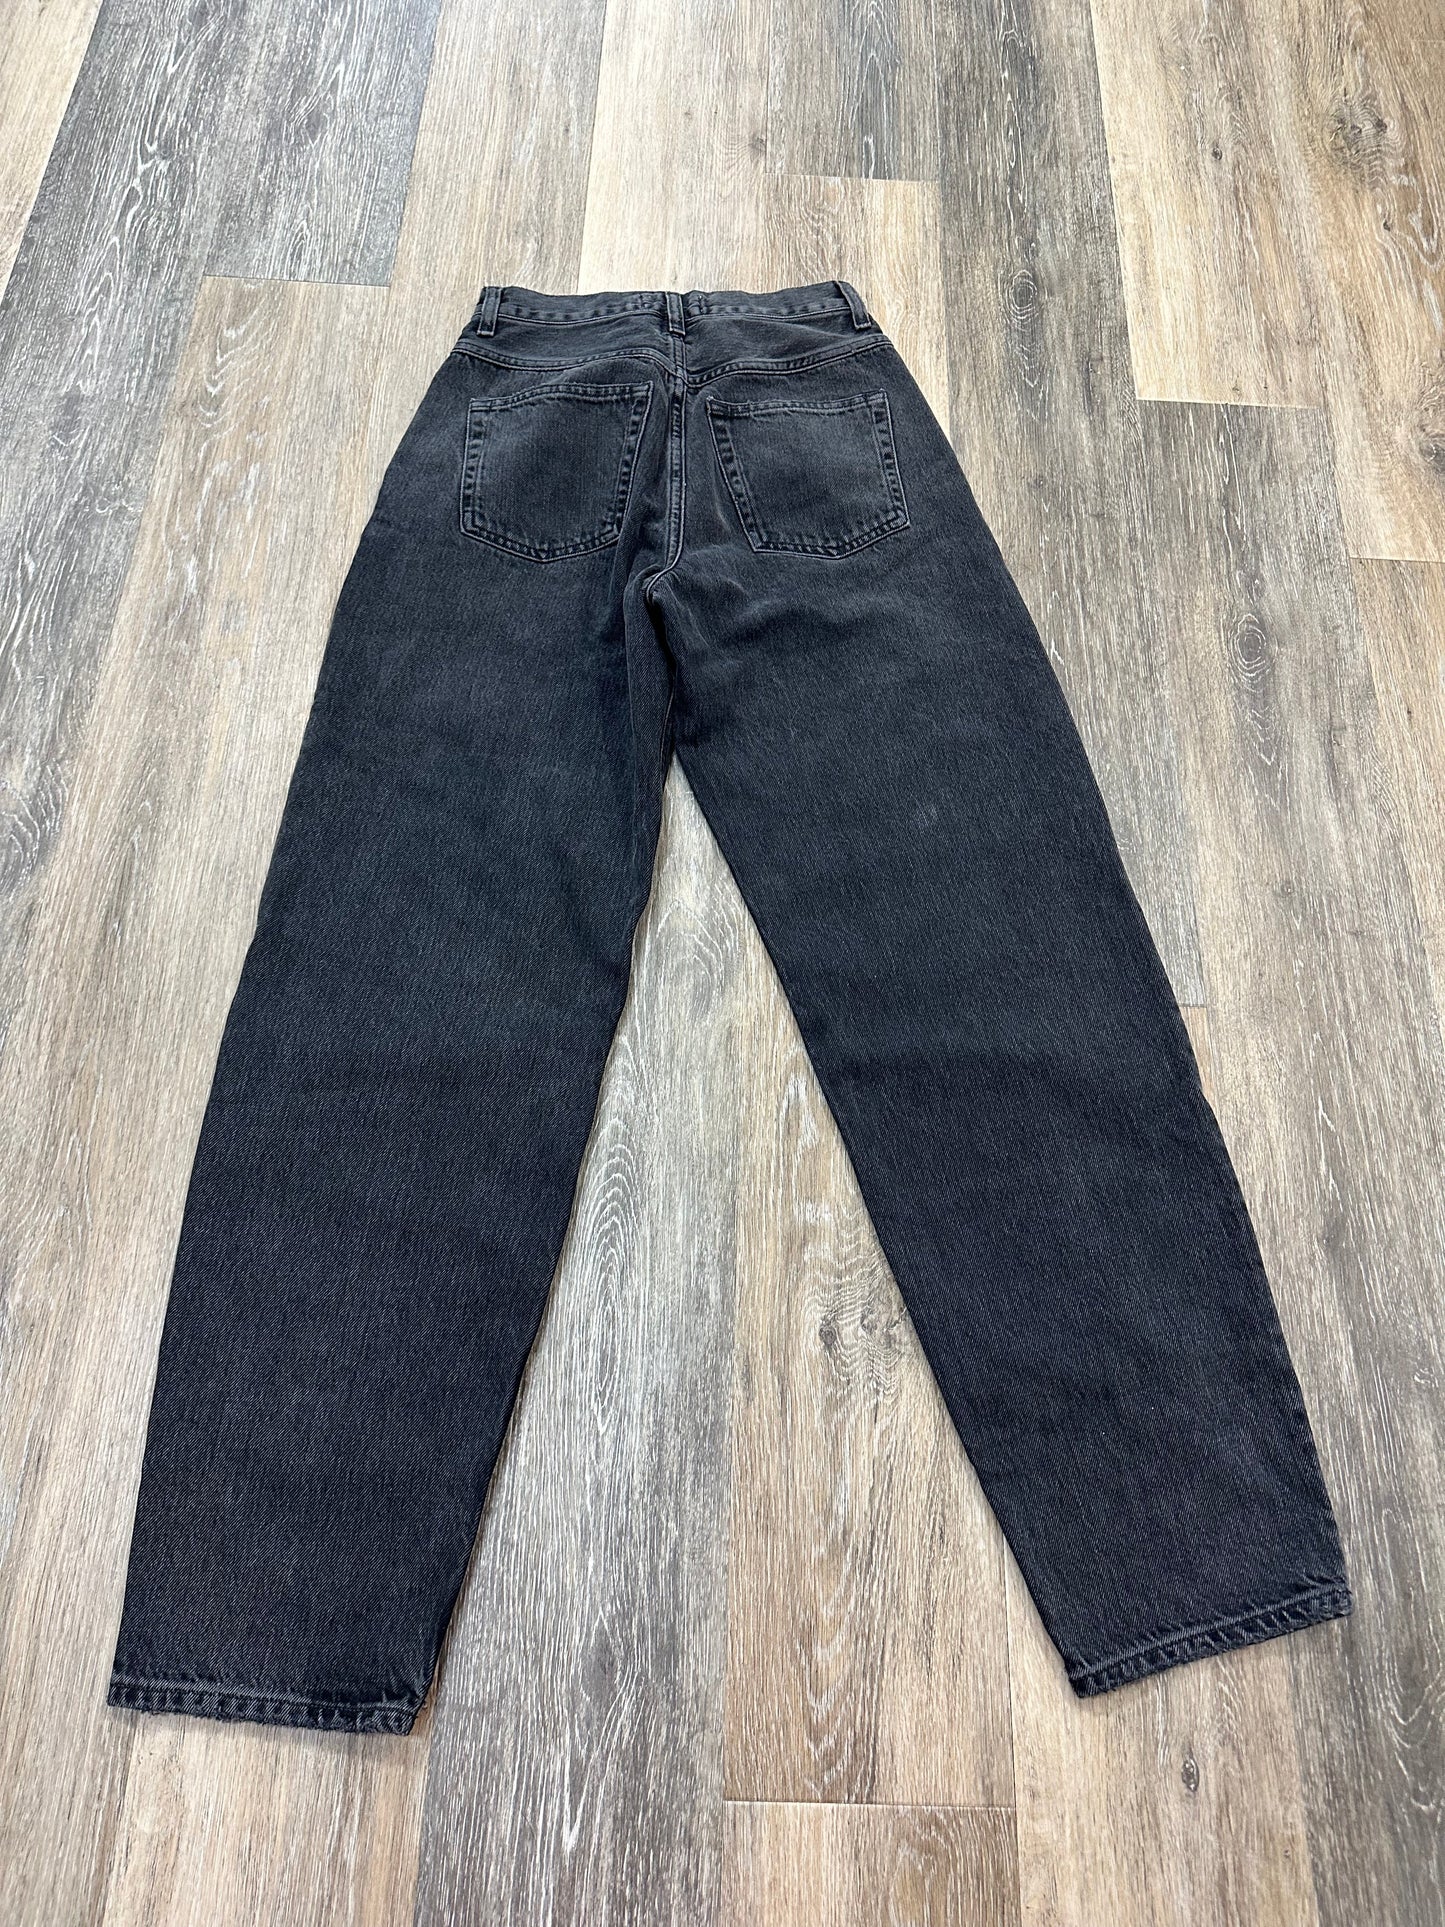 Black Denim Jeans Designer Agolde, Size 00/23